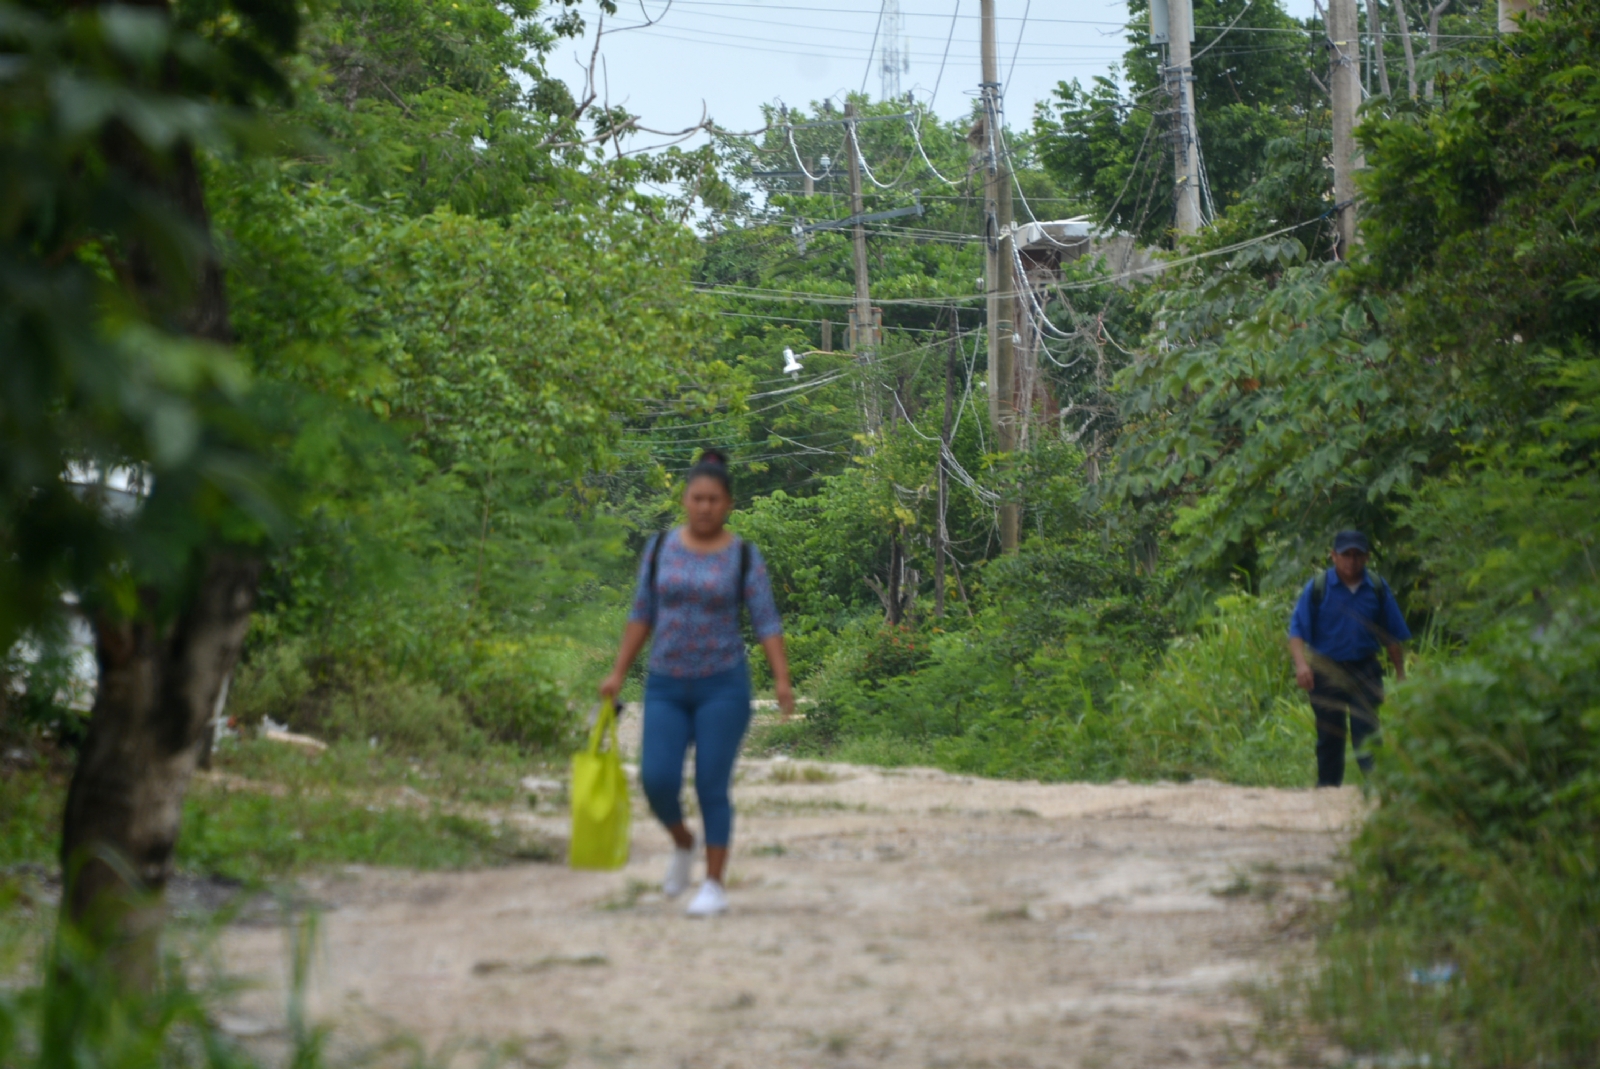 Cancún: Violencia y falta de servicios públicos, así la vida en colonias irregulares